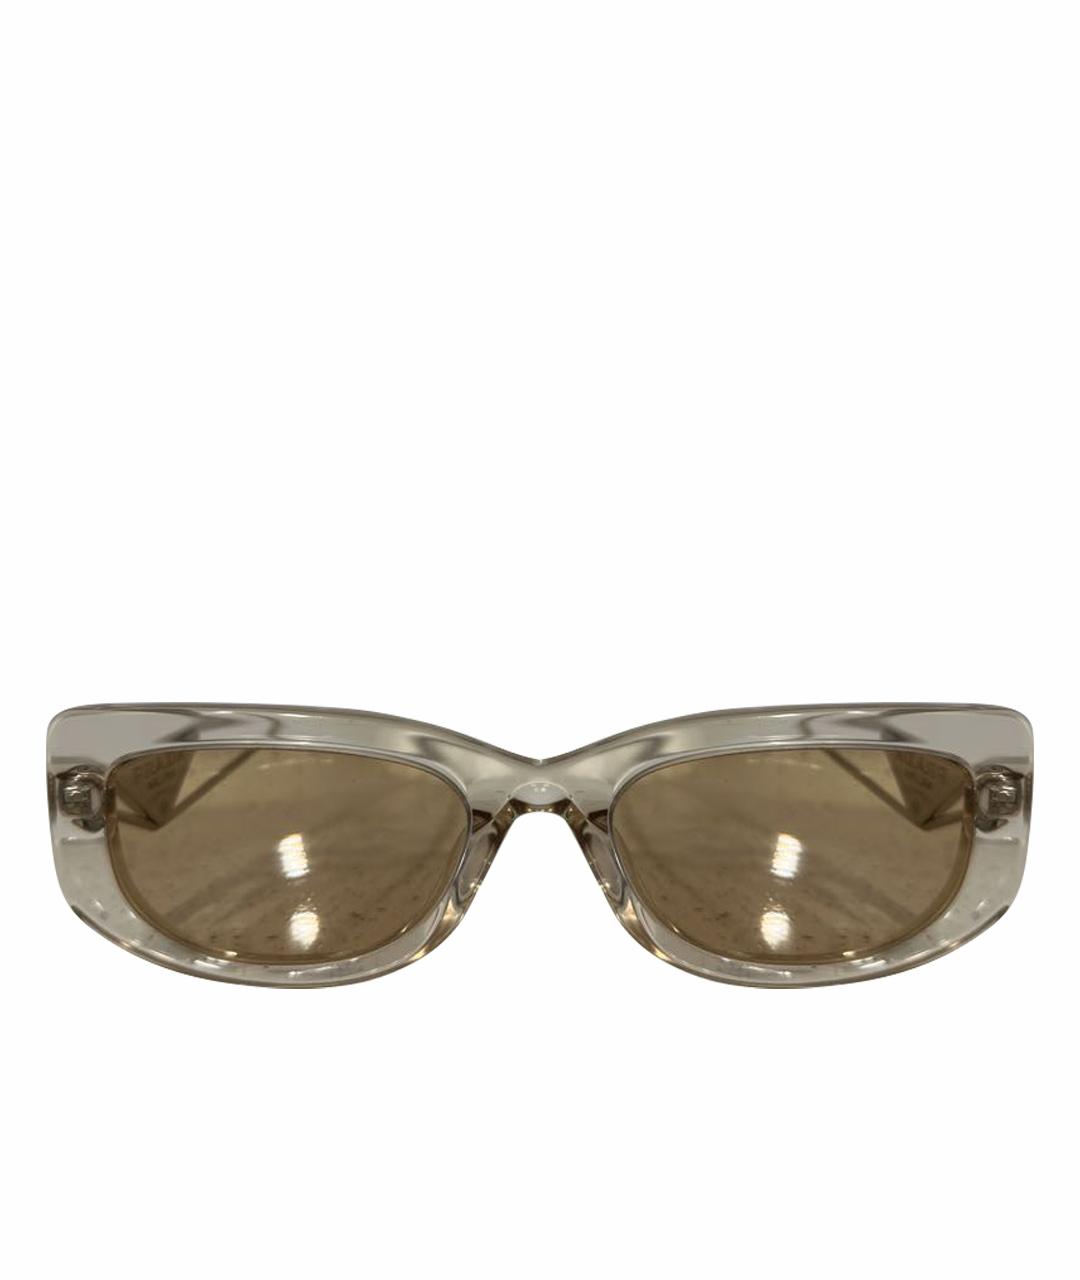 PRADA Бежевые пластиковые солнцезащитные очки, фото 1